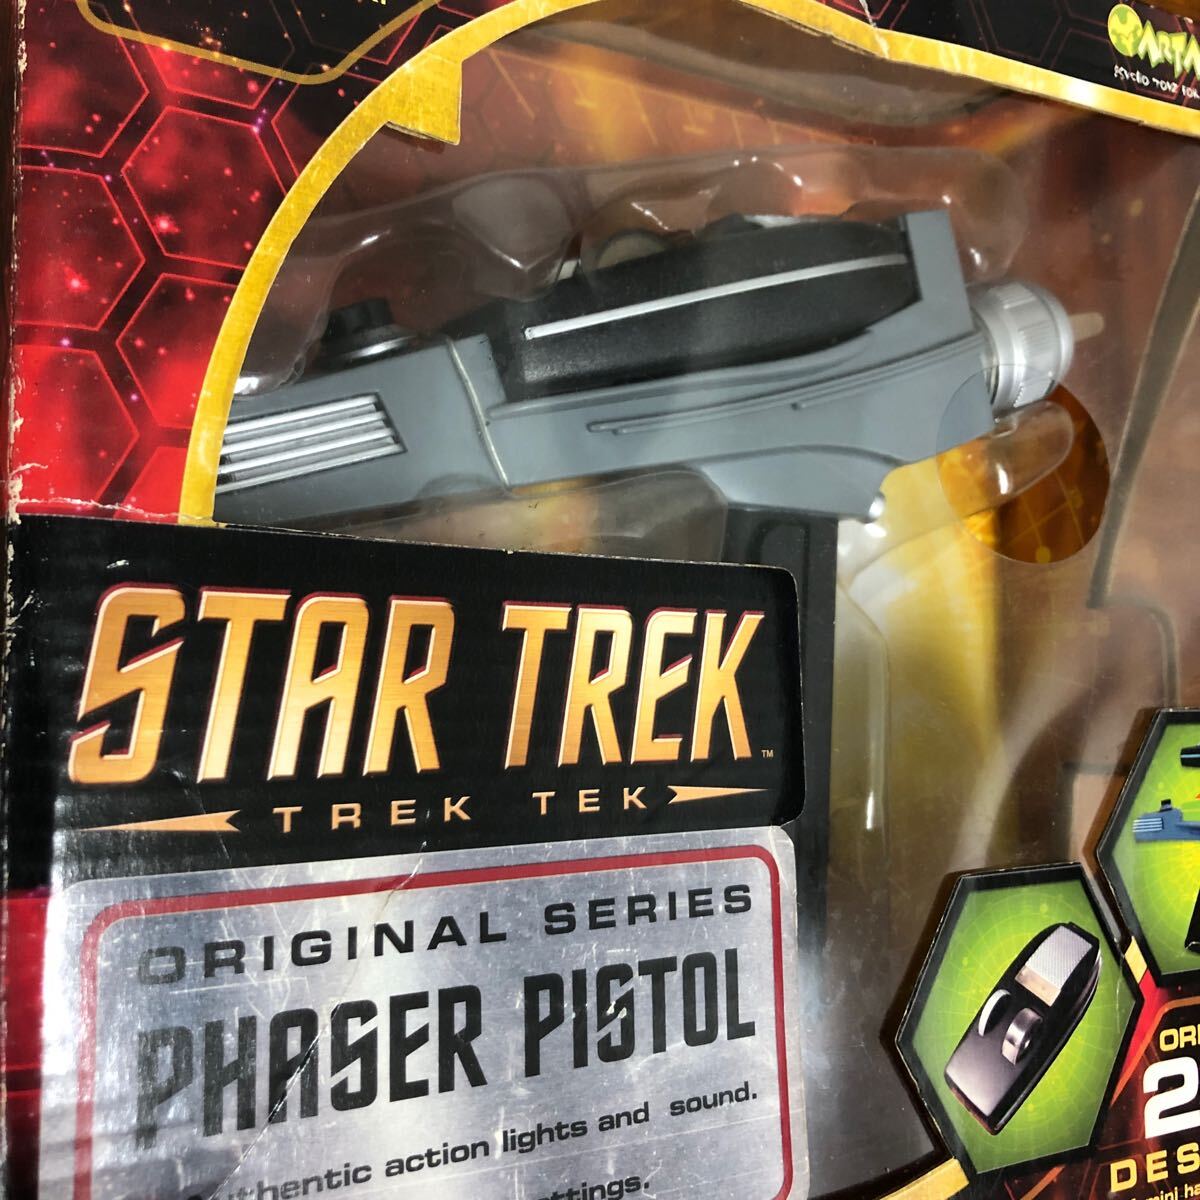 33F5201STAR TREK Star Trek Phaser ружье retro подлинная вещь игрушка фигурка ART.SYLUM TREKTEK оригинал серии phaserpistol